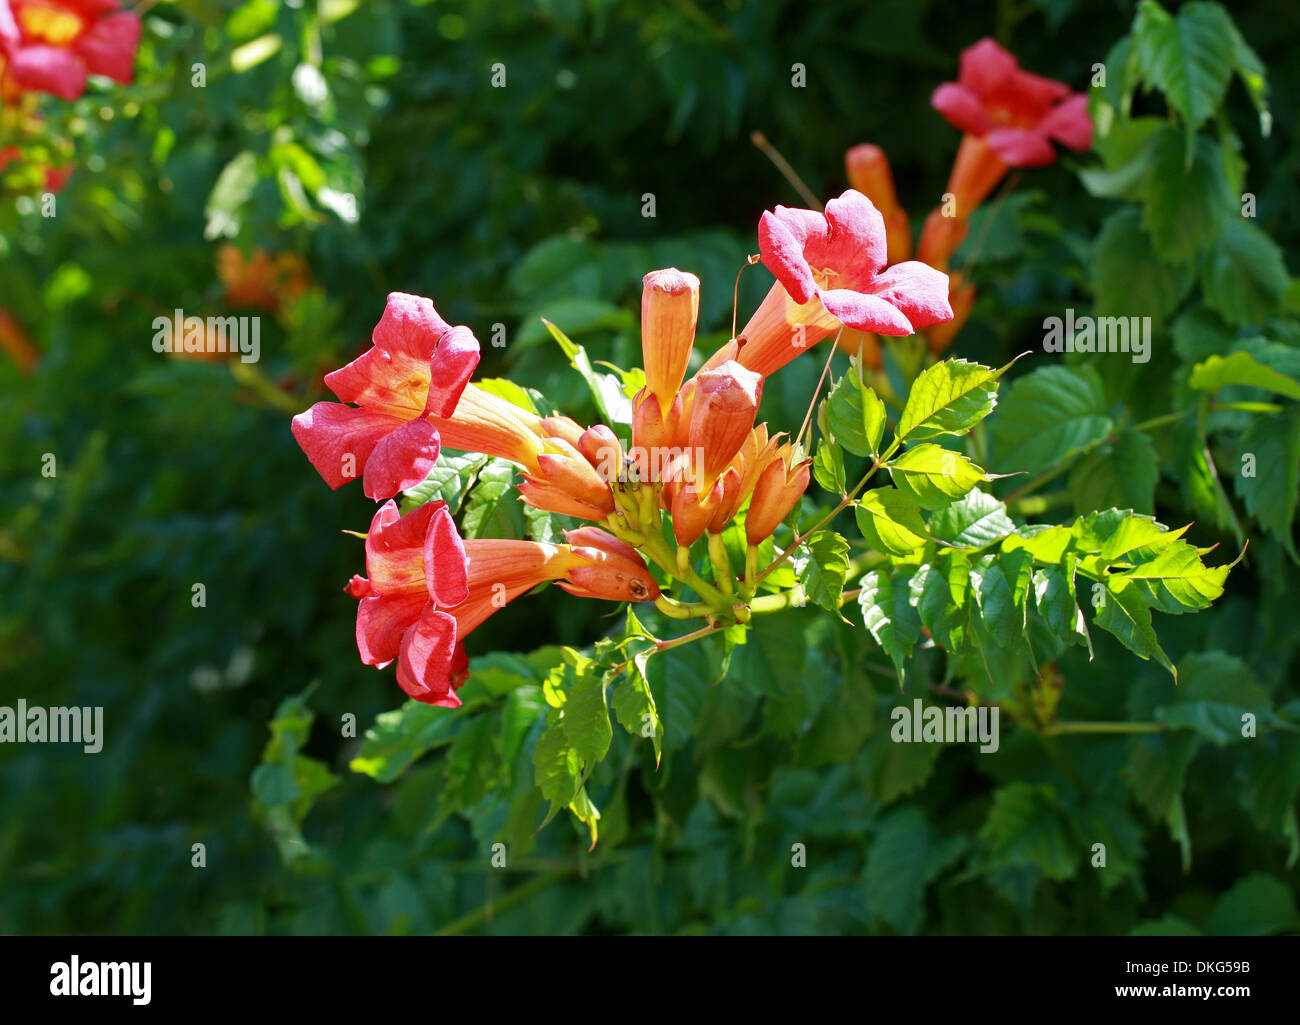 Vid trompeta o trompeta reductor, Campsis radicans, Bignoniaceae. El sureste de EE.UU., en América del Norte. Foto de stock